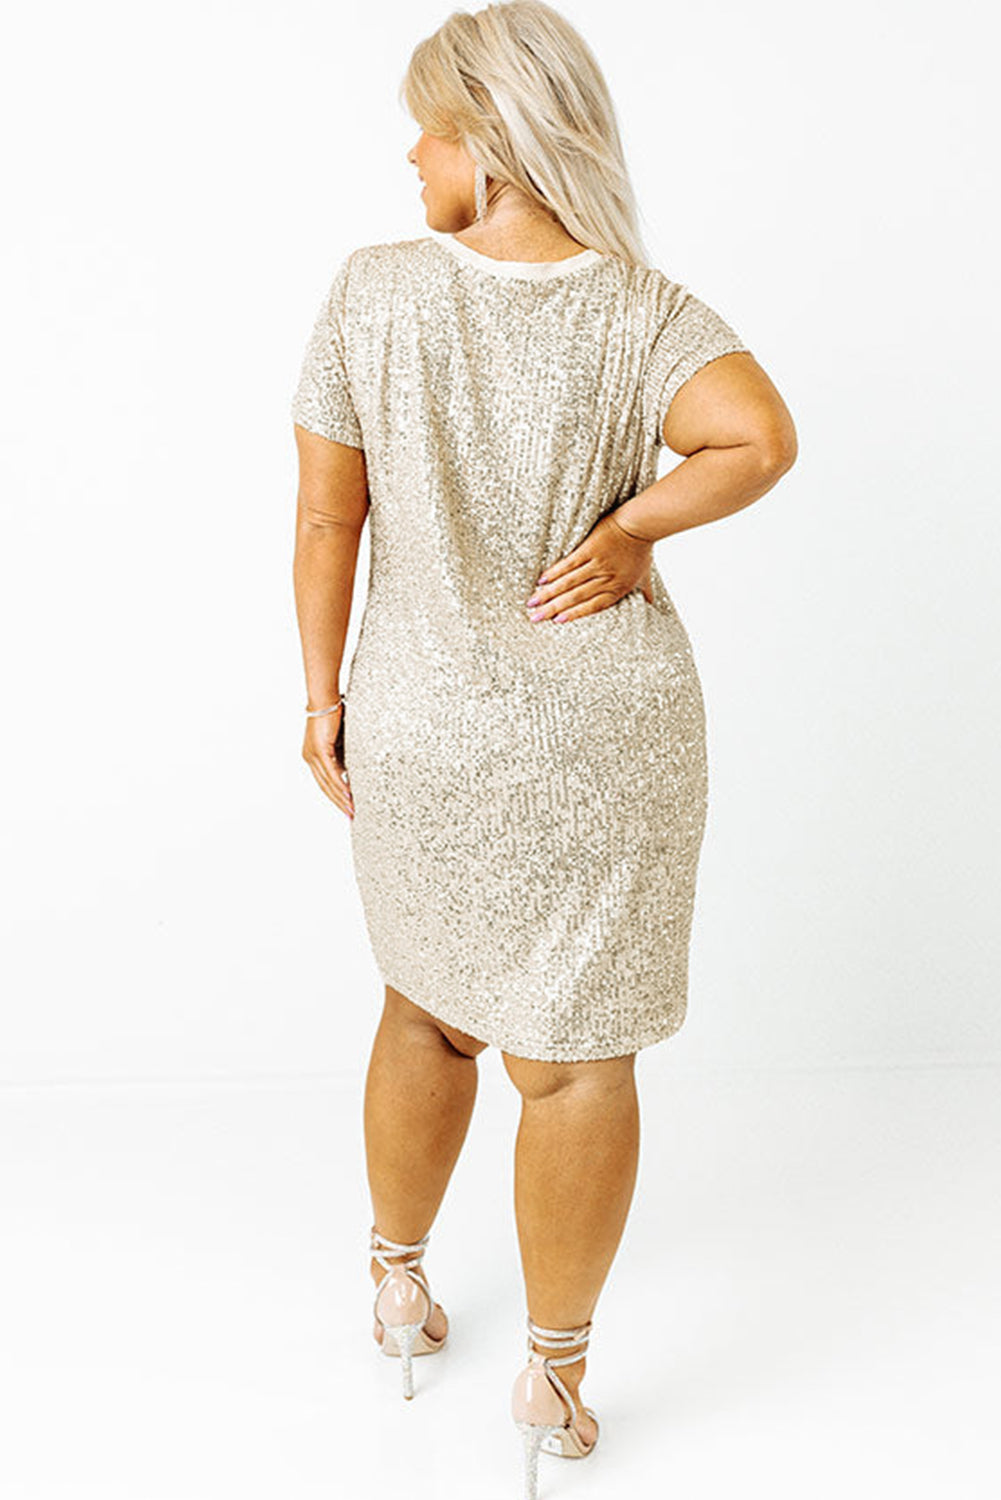 - Silvery Voluptuous (+) Plus Size Sequin Short Sleeve T Shirt Dress - Plus Size Dresses at TFC&H Co.